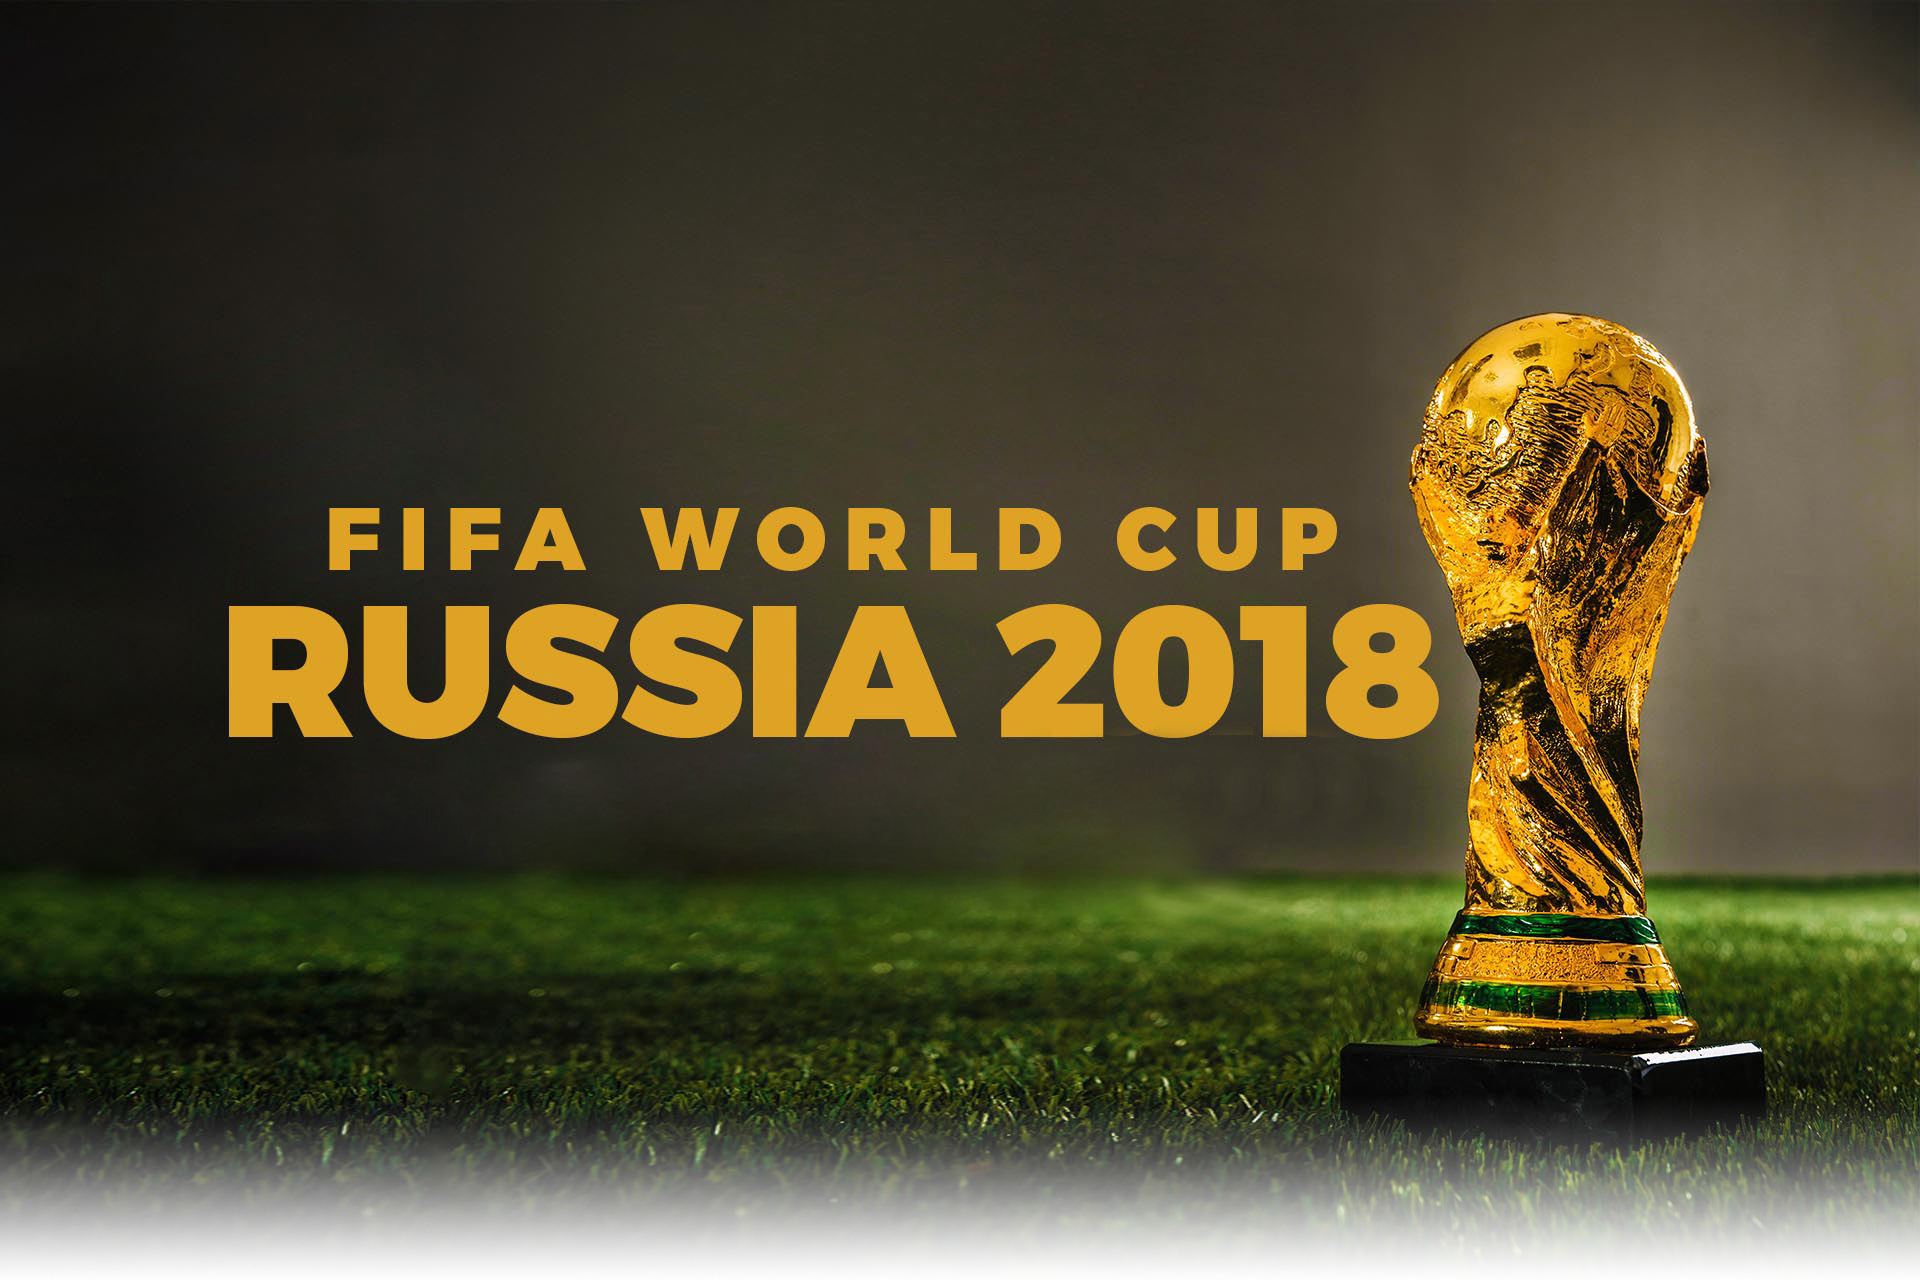 Quần hùng tranh World Cup 2018: Messi, Ronaldo, Neymar & Cuộc đua tới ngôi vua - 5